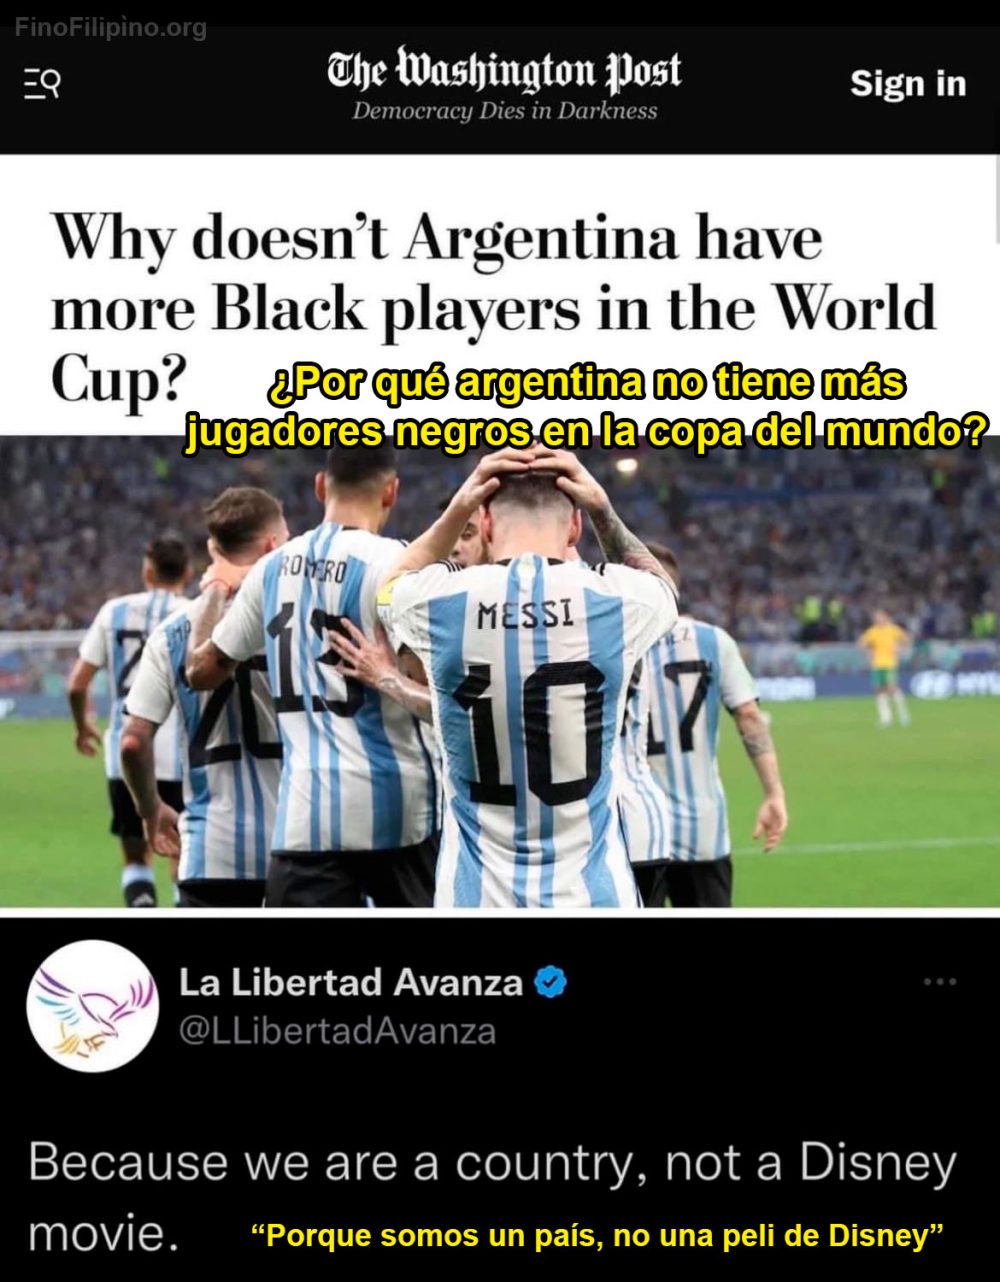 ¿Por qué Argentina no tiene más jugadores negros en su selección?